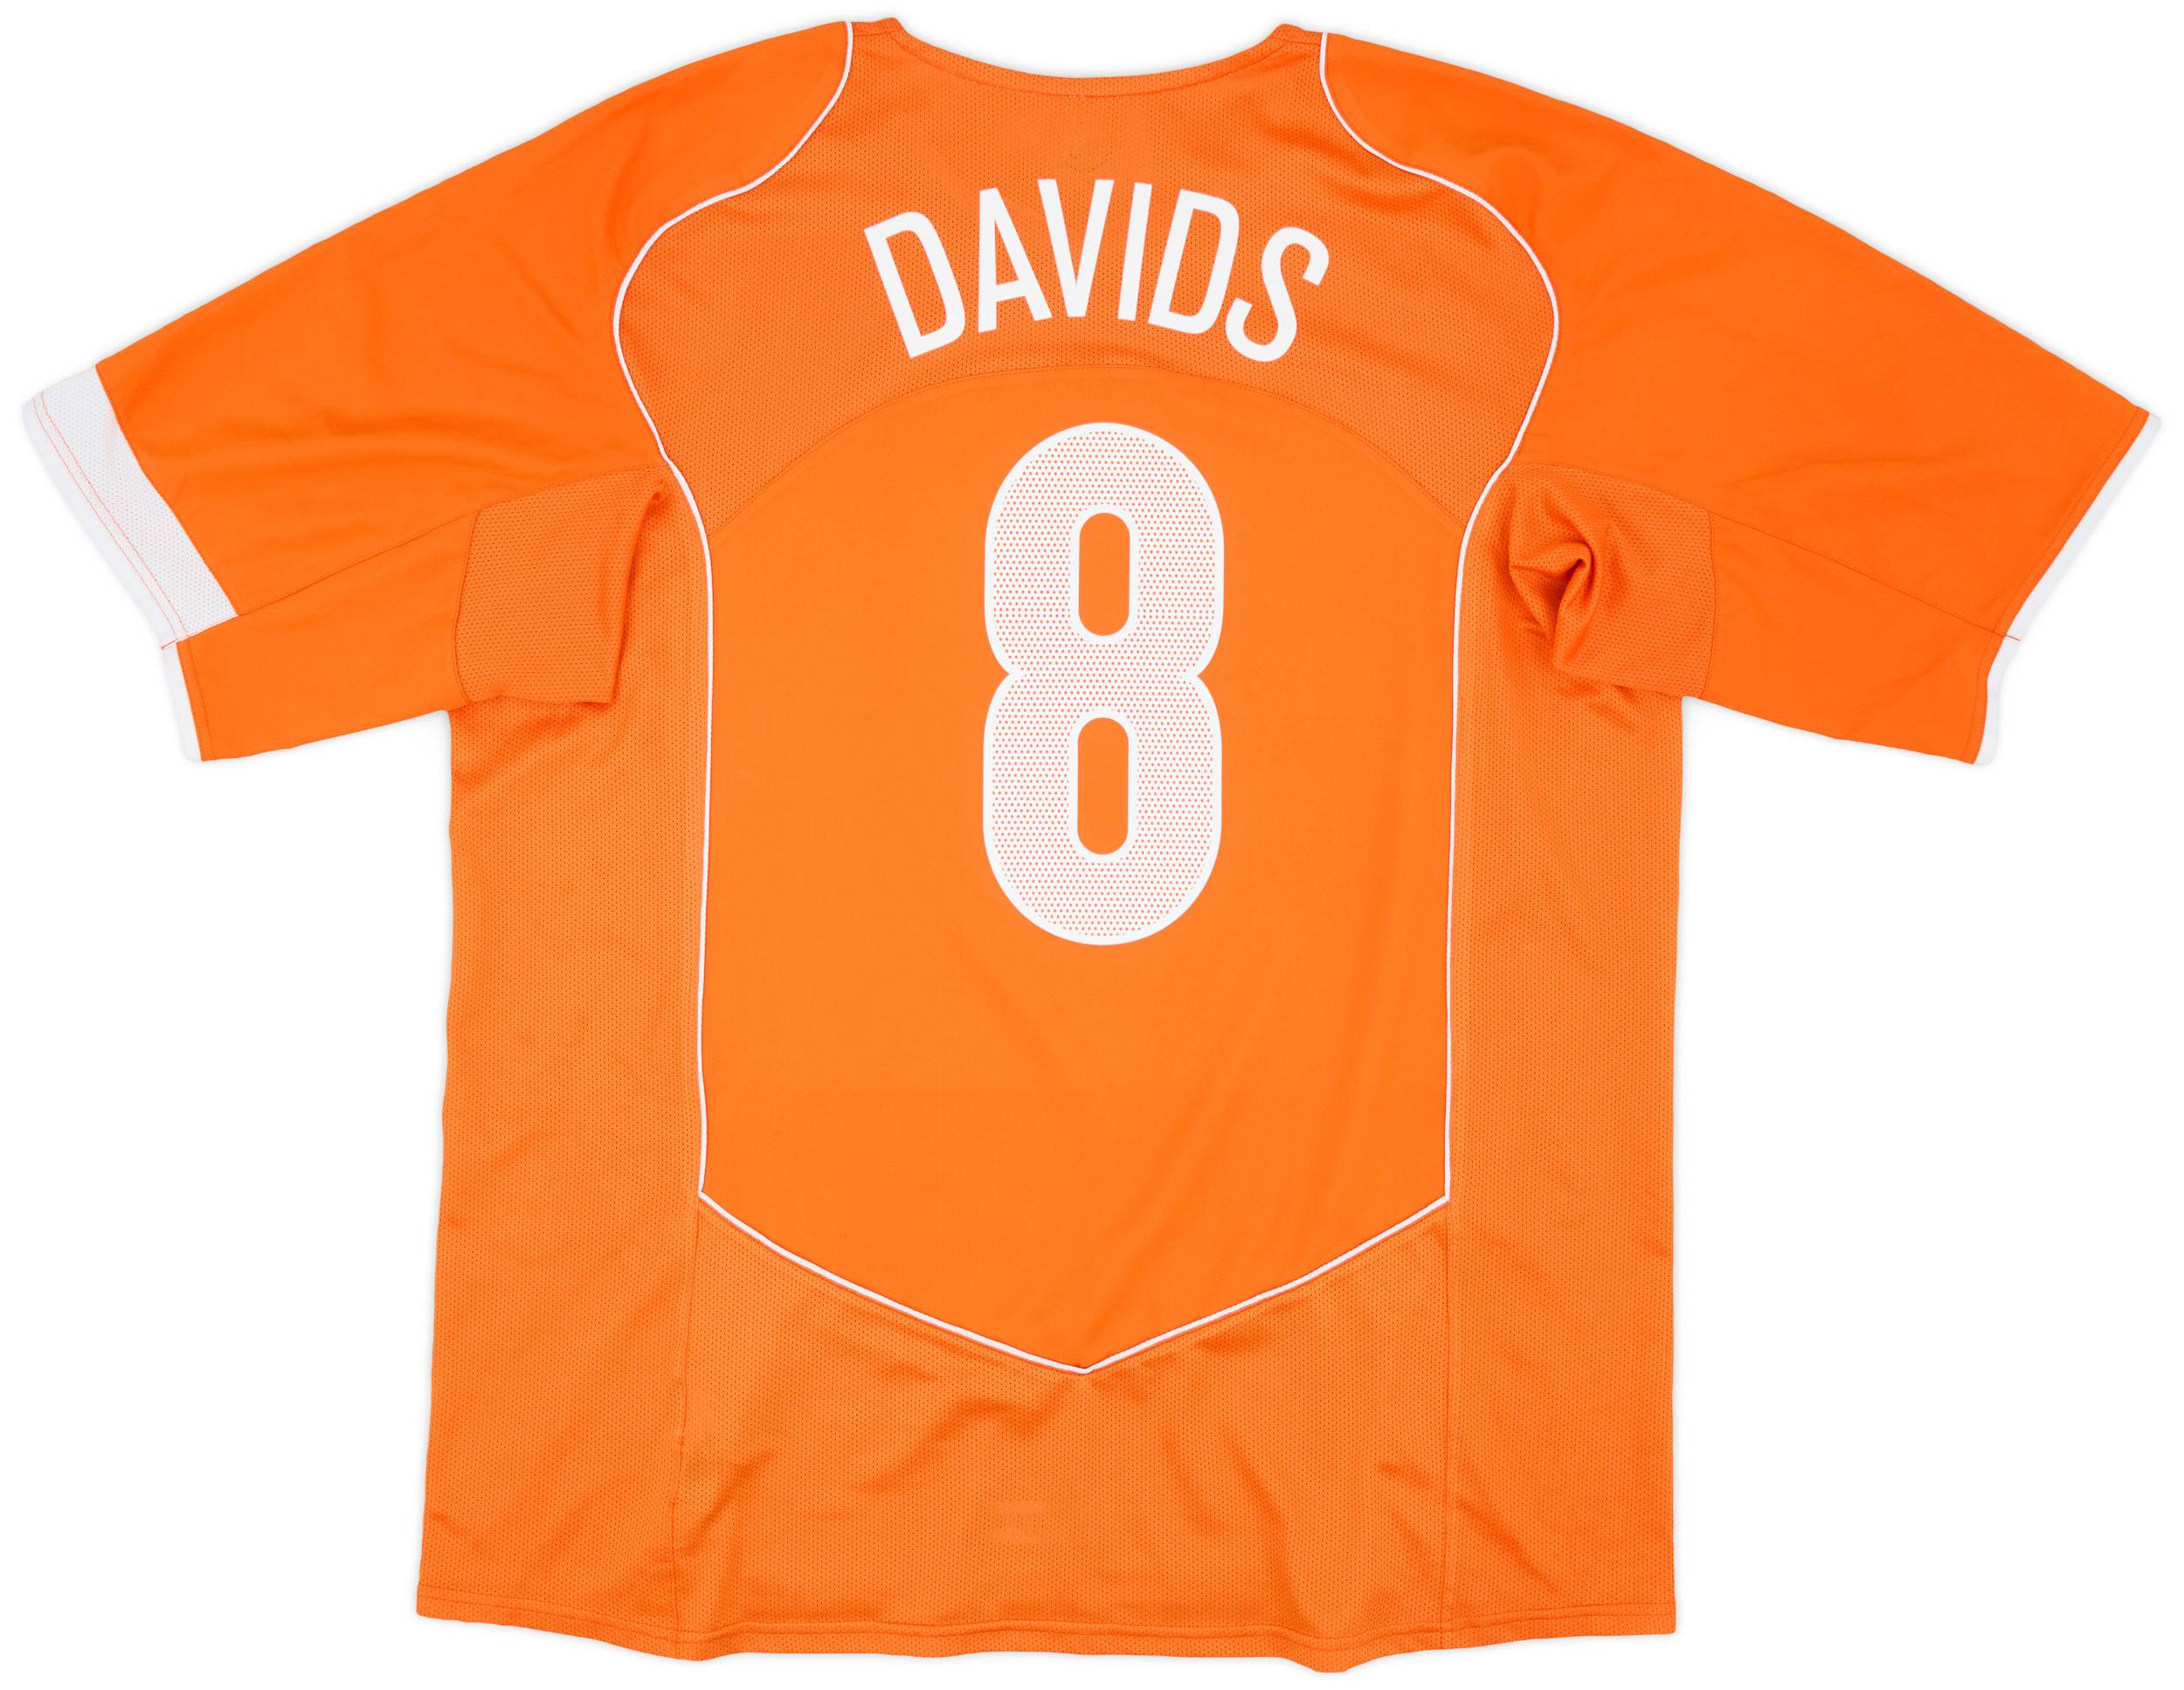 2004-06 Netherlands Home Shirt Davids #8 - 6/10 - (3XL)